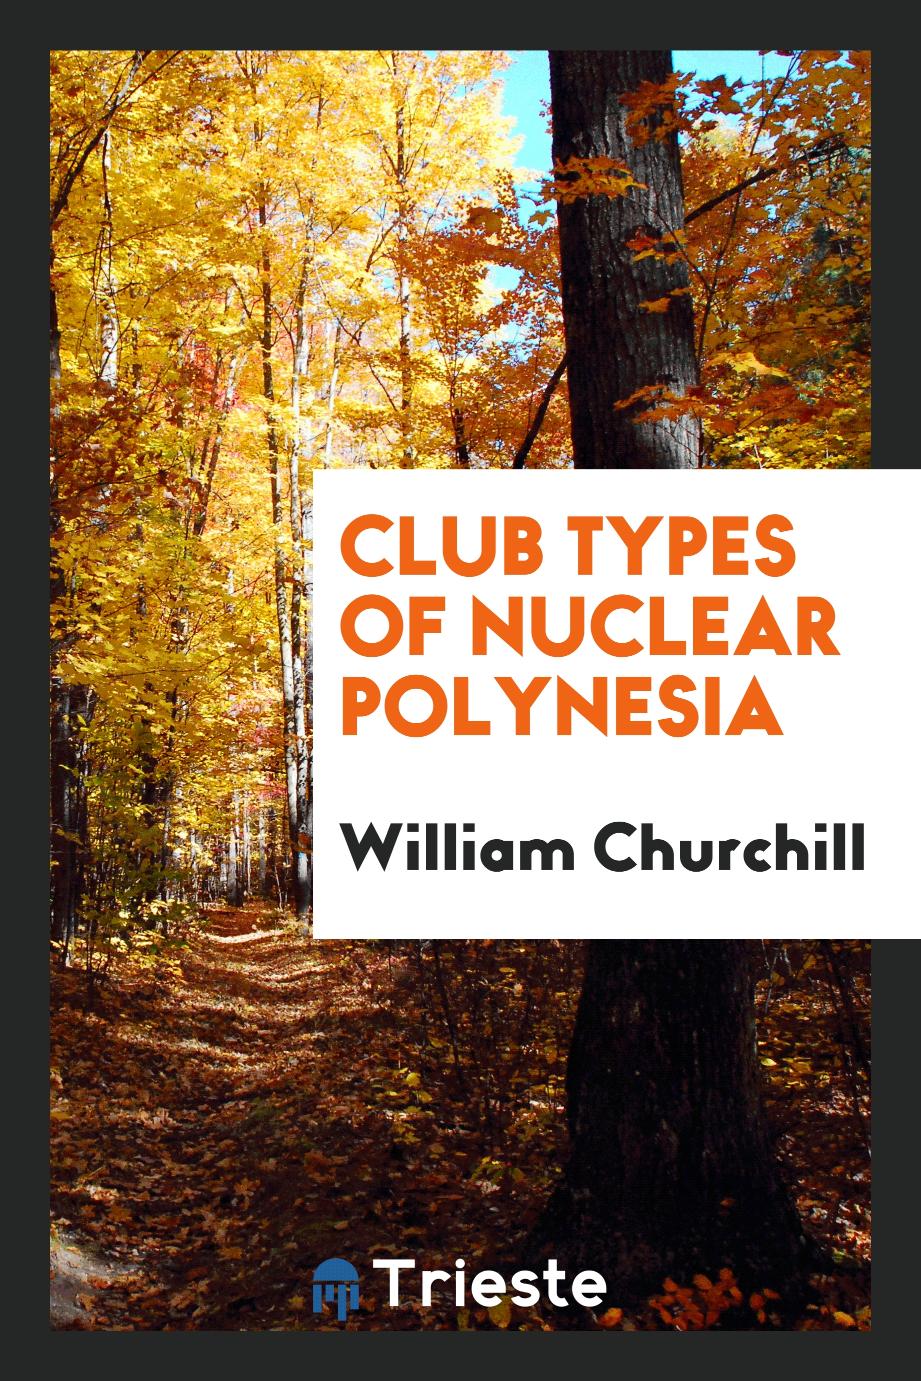 Club types of Nuclear Polynesia